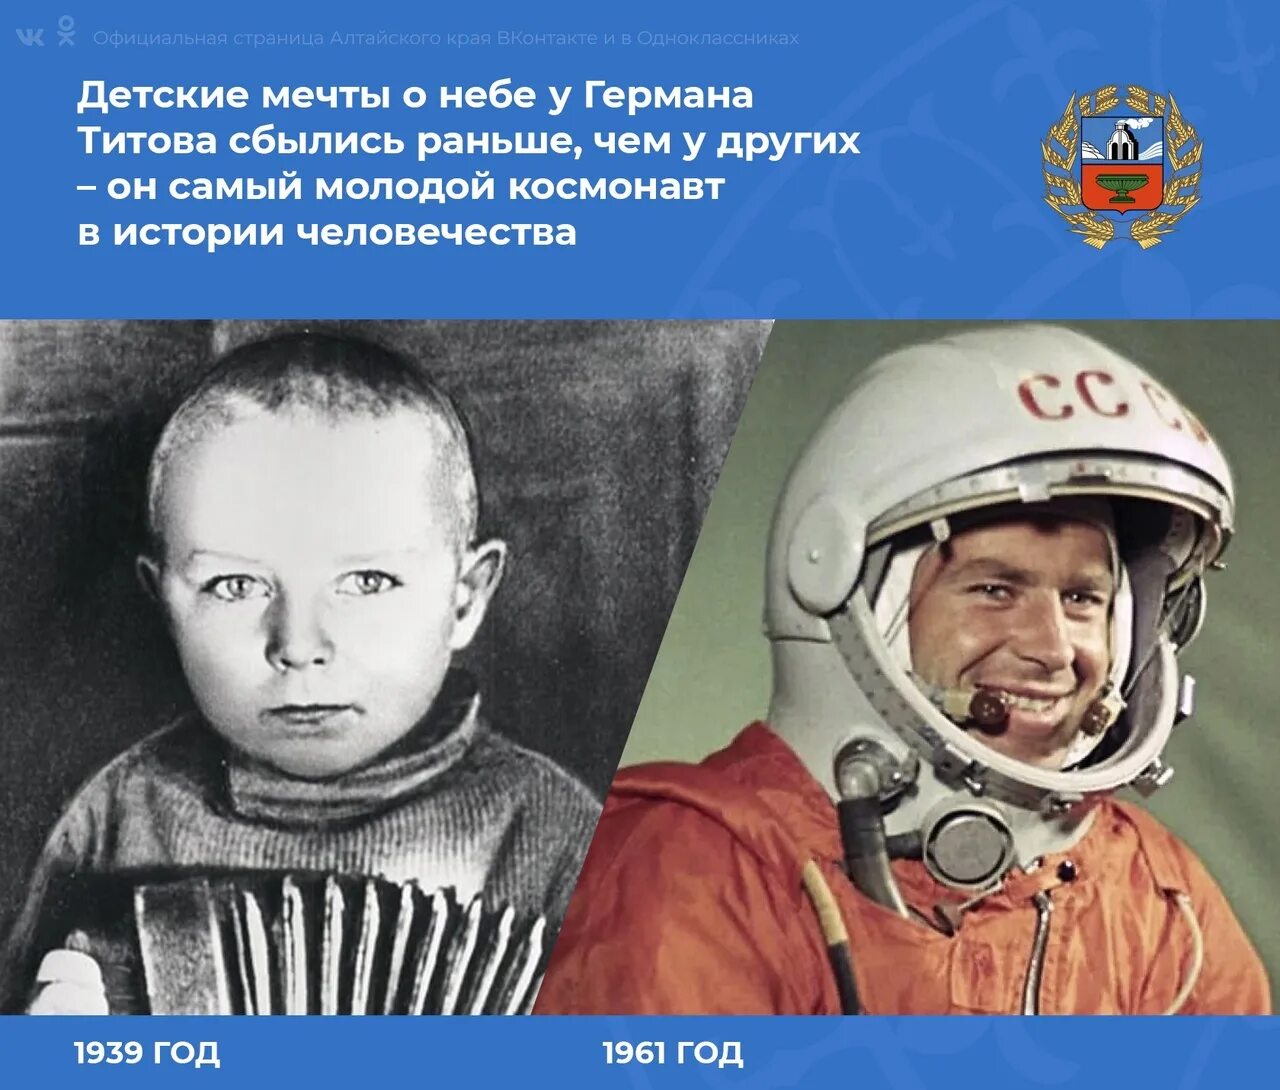 Полет в космос Германа Титова 1961 г. Титов какой полетел